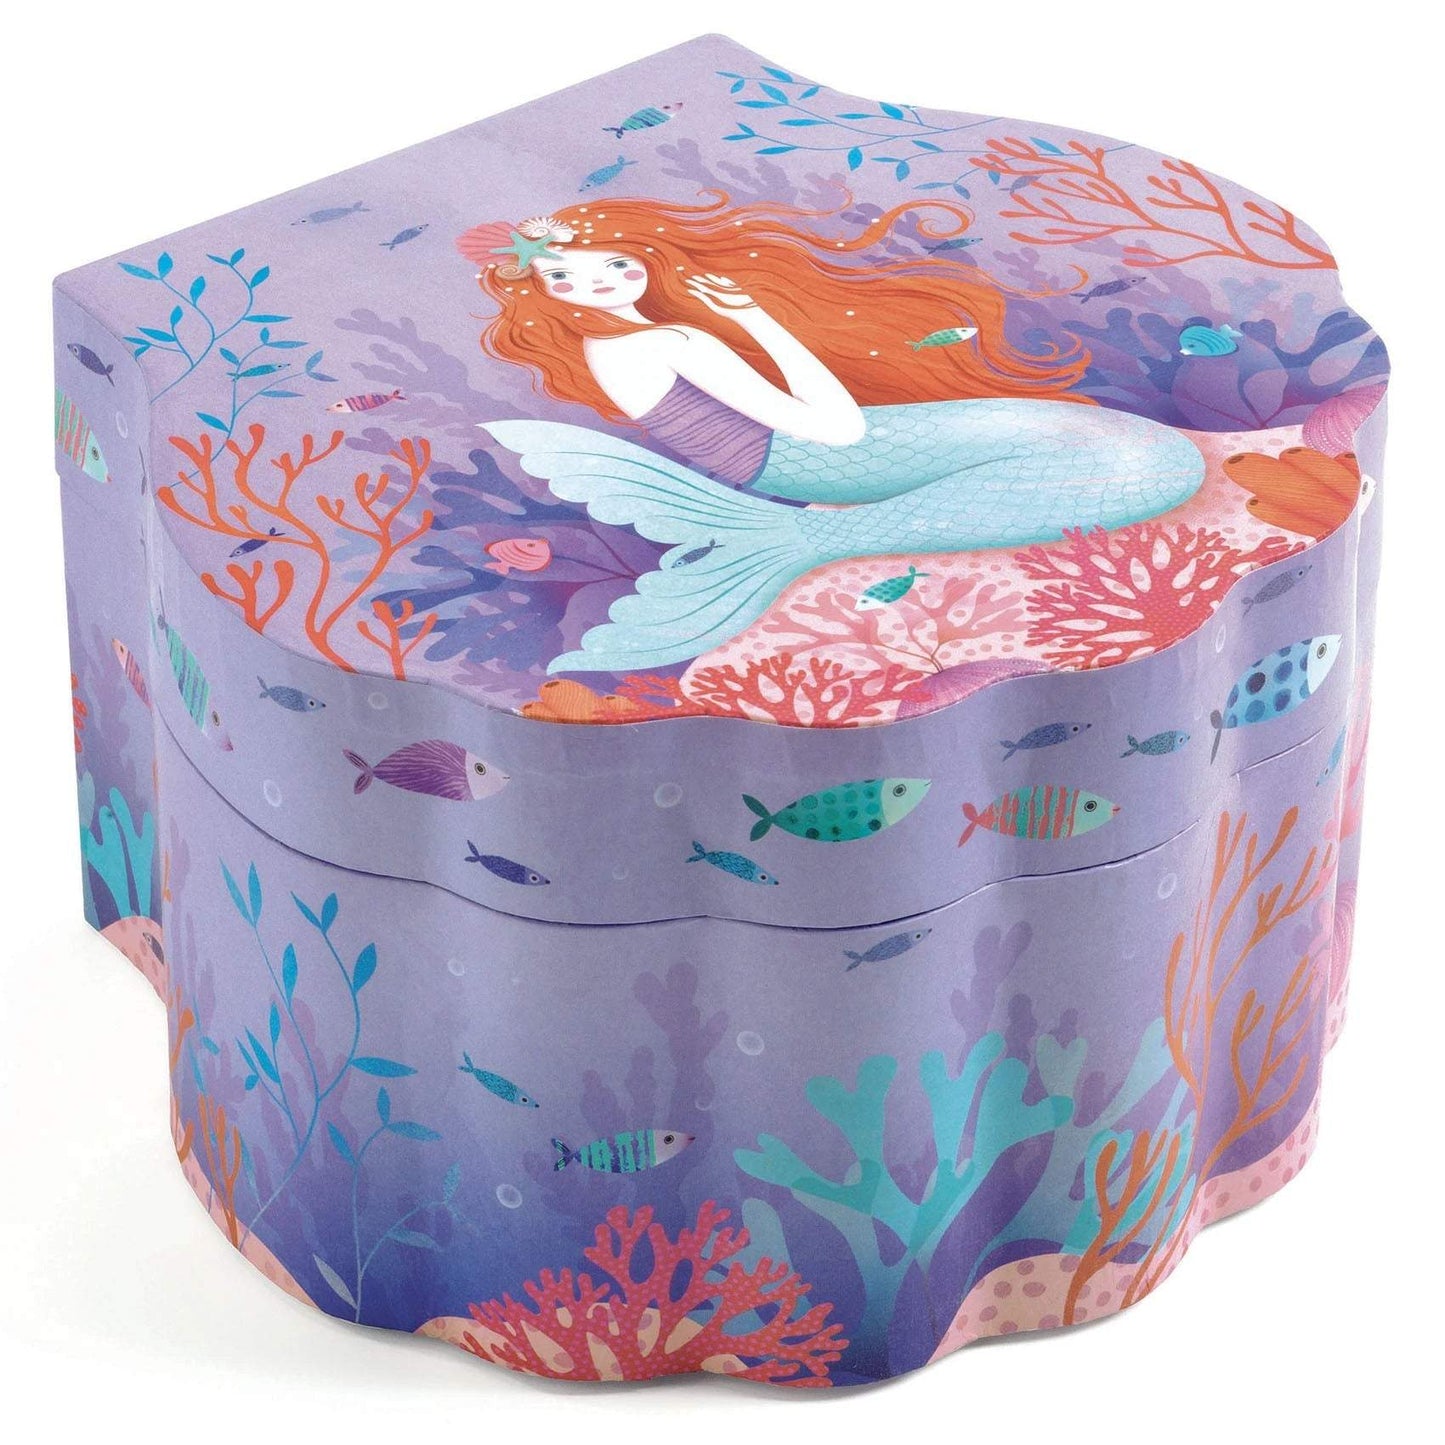 Treasure Box - Enchanted Mermaid